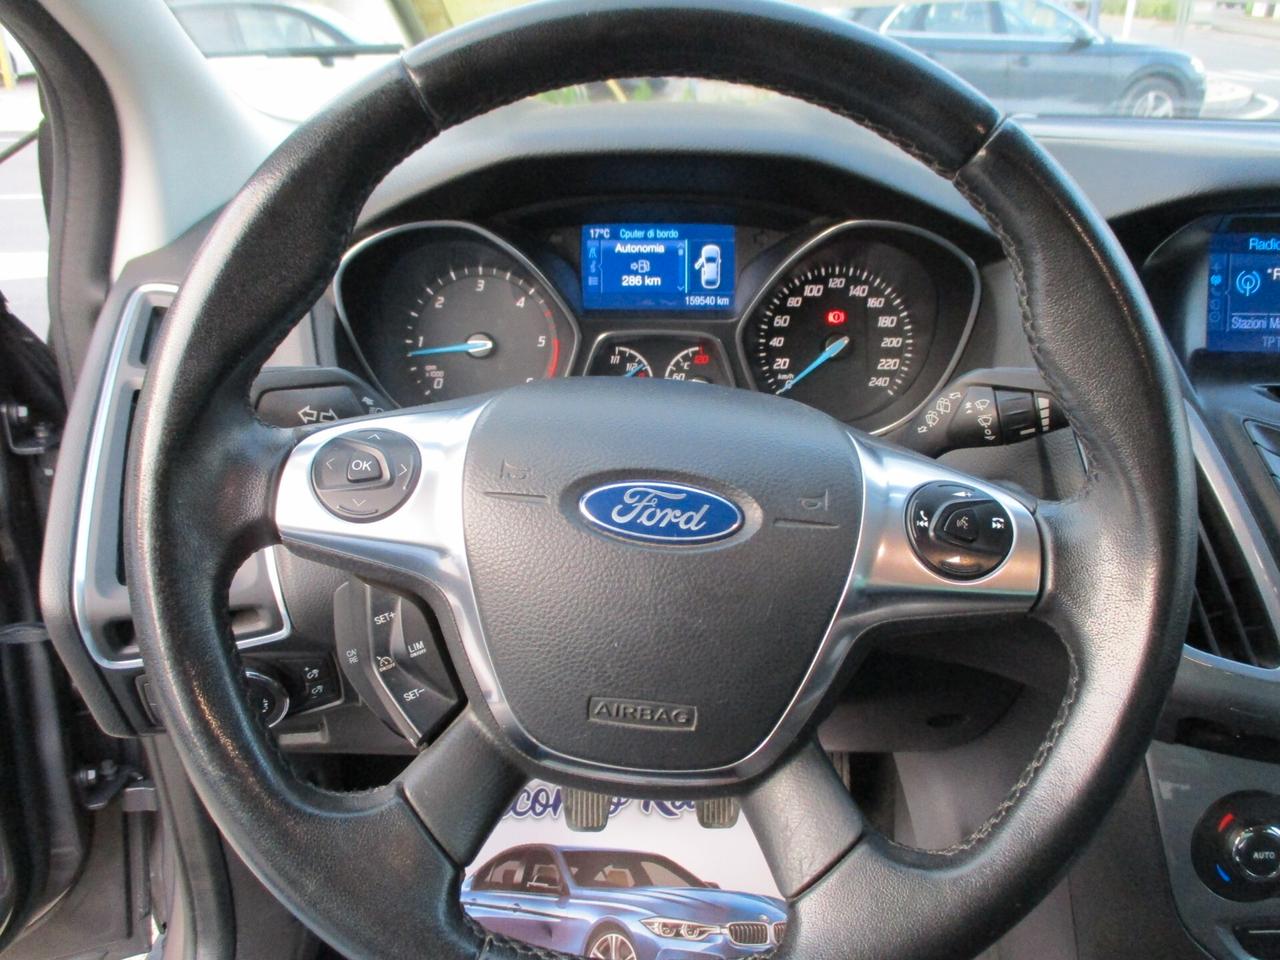 Ford Focus 1.6 TDCi 115 CV Titanium 2014